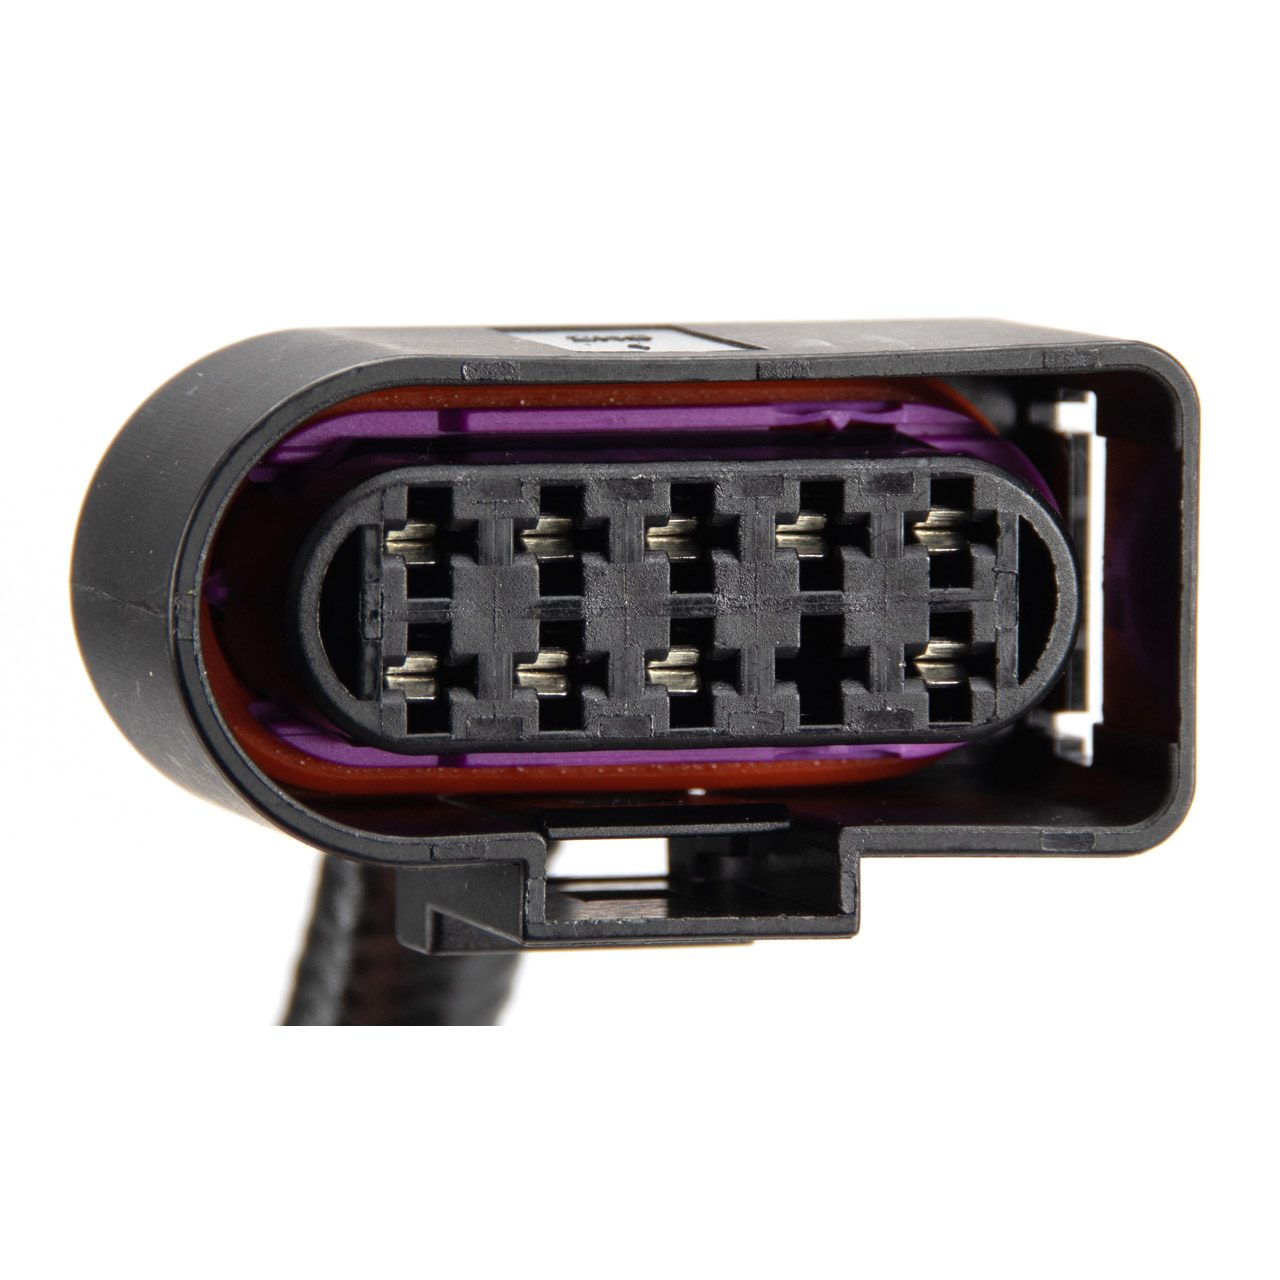 OSRAM sonstige Autolampen / Leuchten-Zubehör - LEDSC01-2HFB 